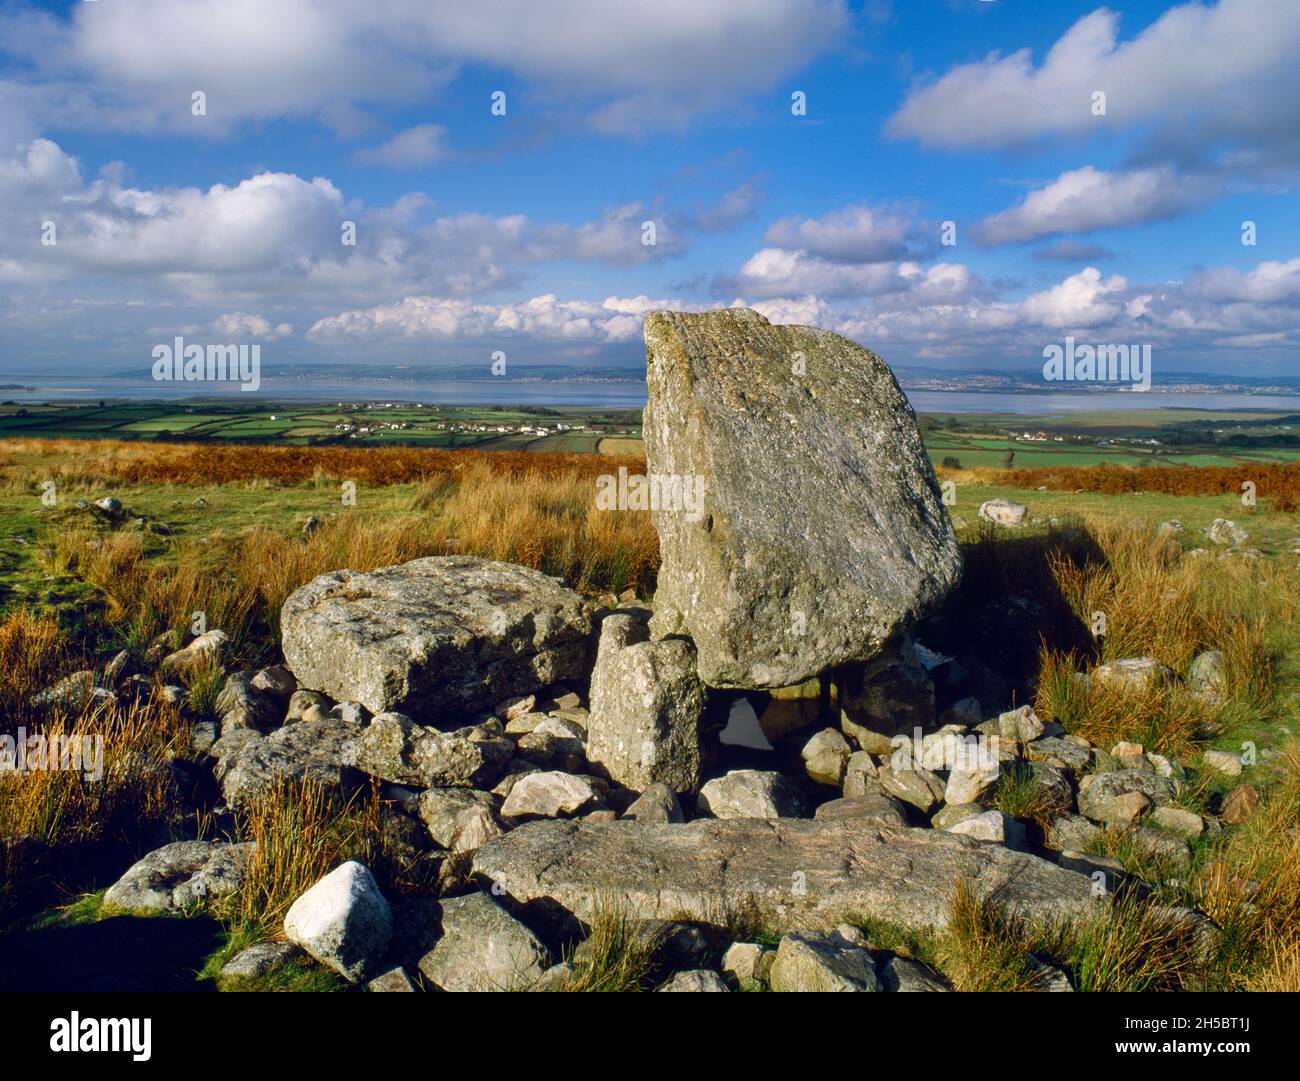 Sehen Sie N of Arthur's Stone Neolithische Grabkammer auf Cefn Bryn Common, Gower, Wales, Großbritannien. Der Kapstone ist ein 25-Tonnen-Eiserratisch aus Mühlstein-Körnung. Stockfoto